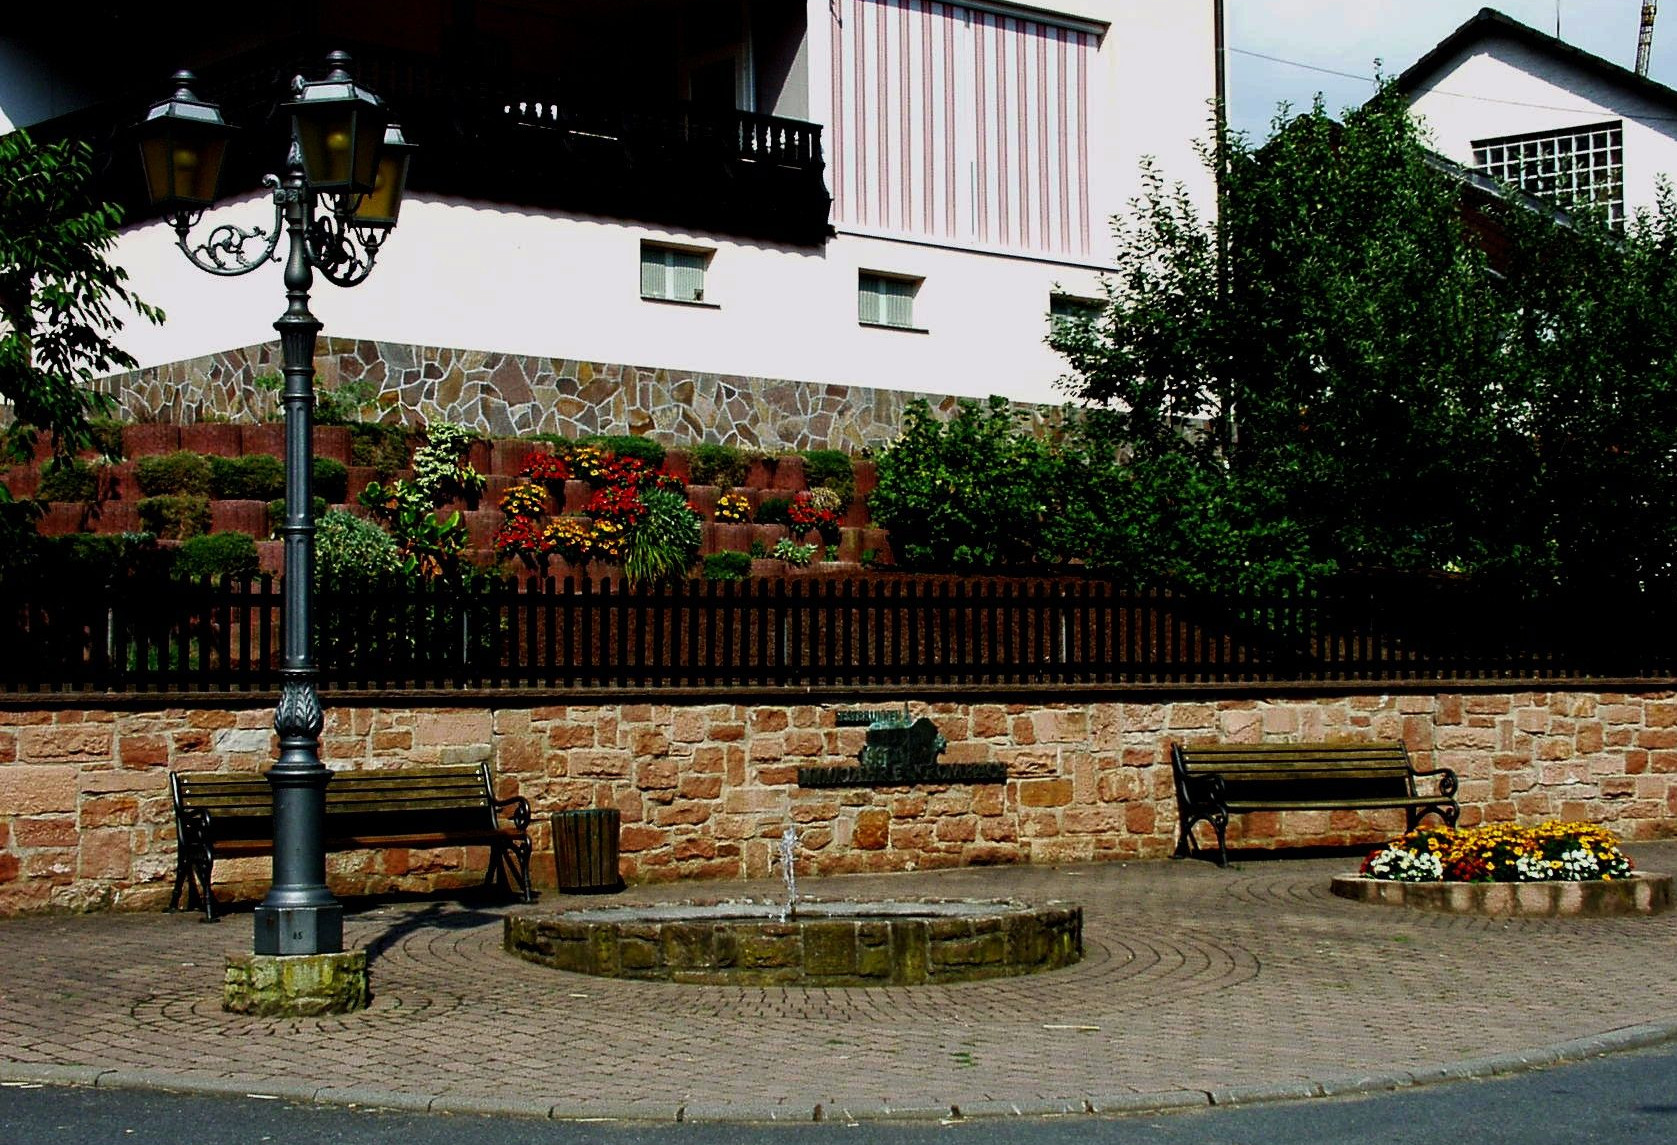  Festbrunnen - Krombach 